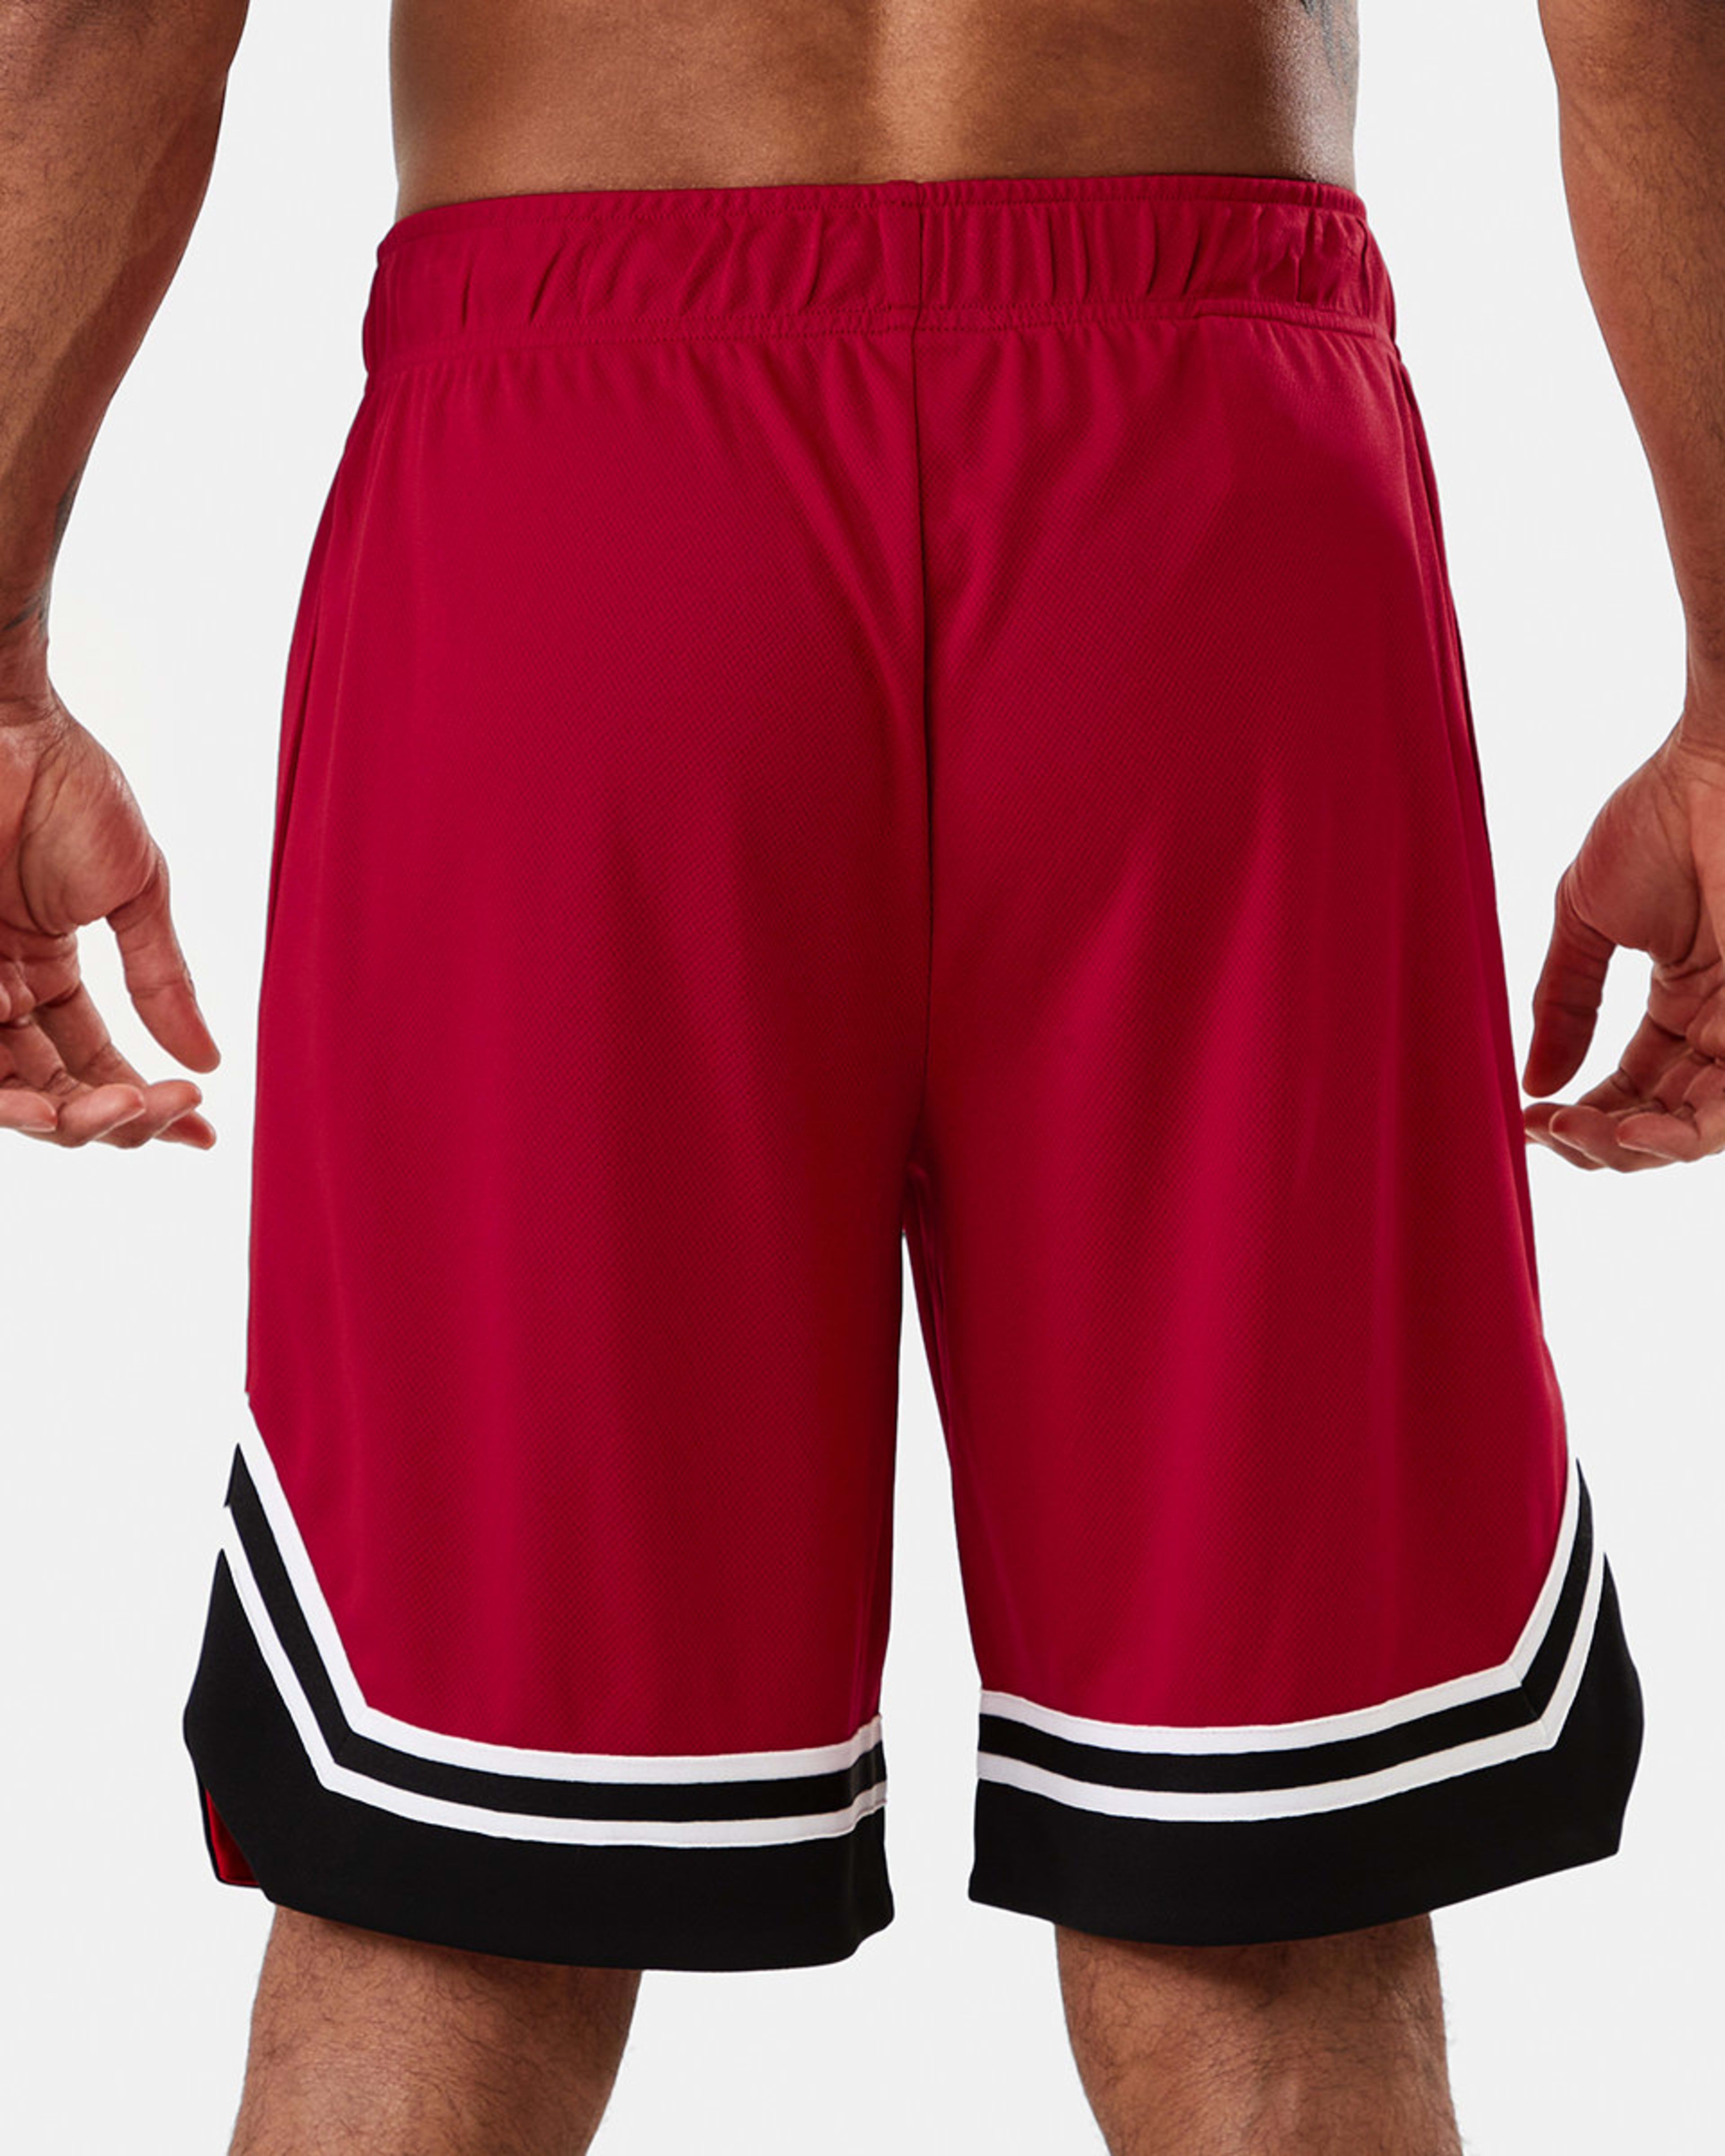 Active Mens Basketball Shorts - Kmart